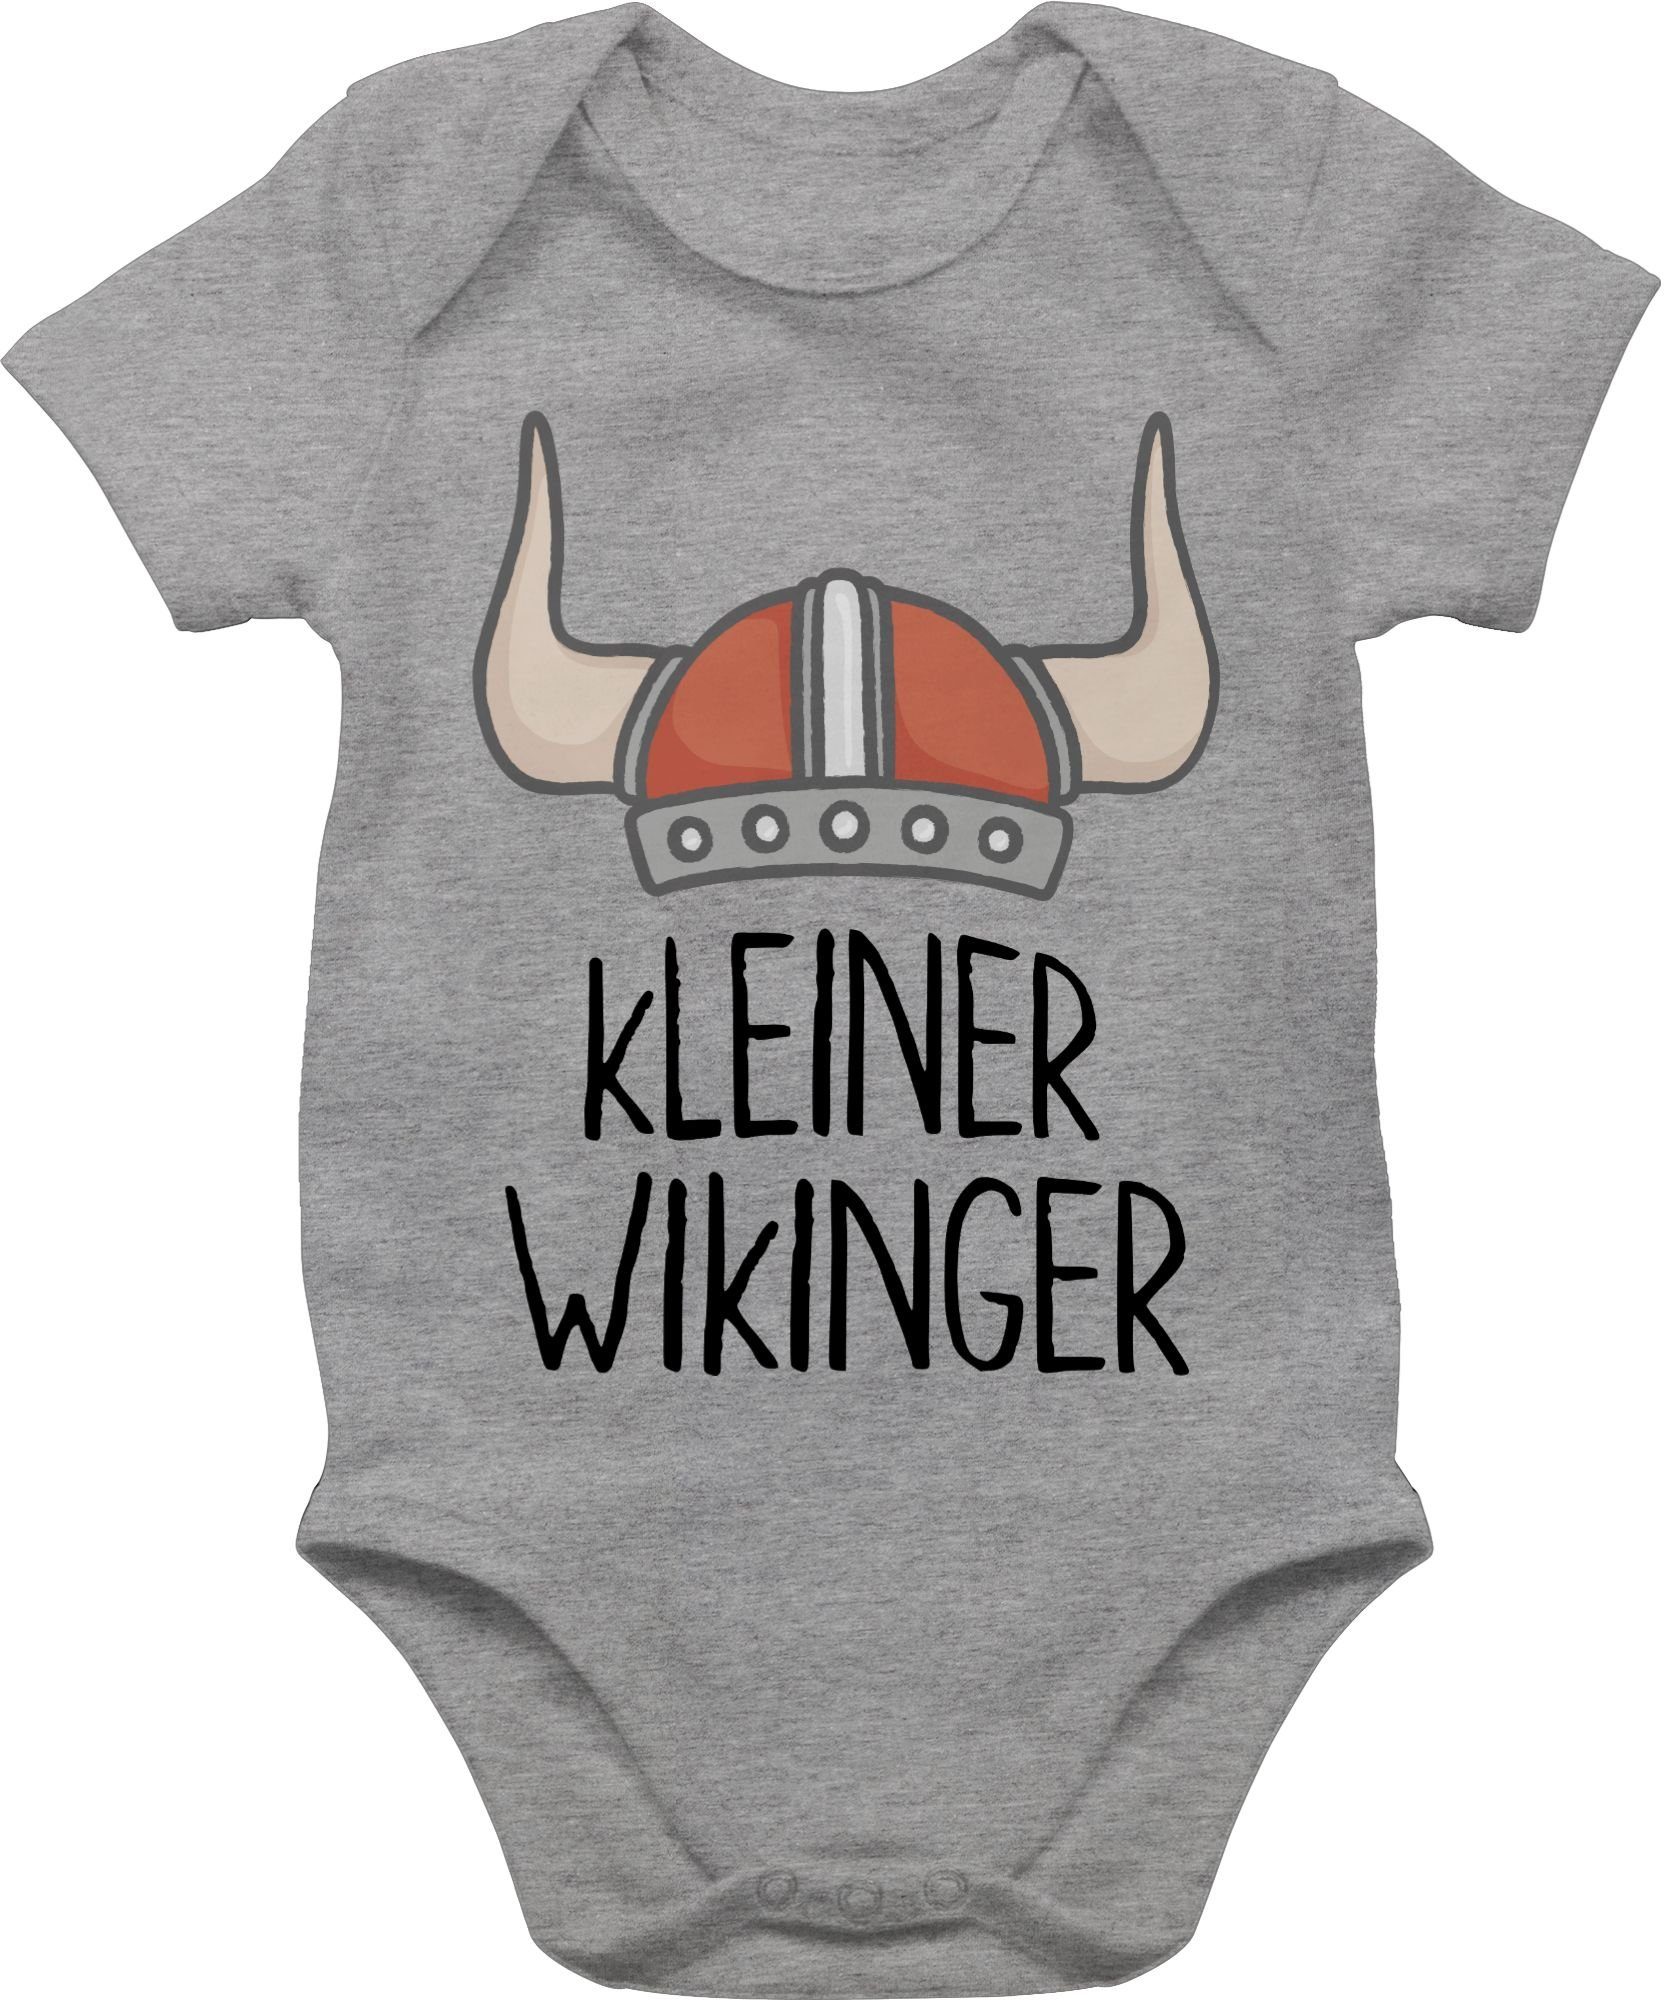 Shirtracer Shirtbody kleiner Wikinger Wikinger & Walhalla Baby 1 Grau meliert | Shirtbodies